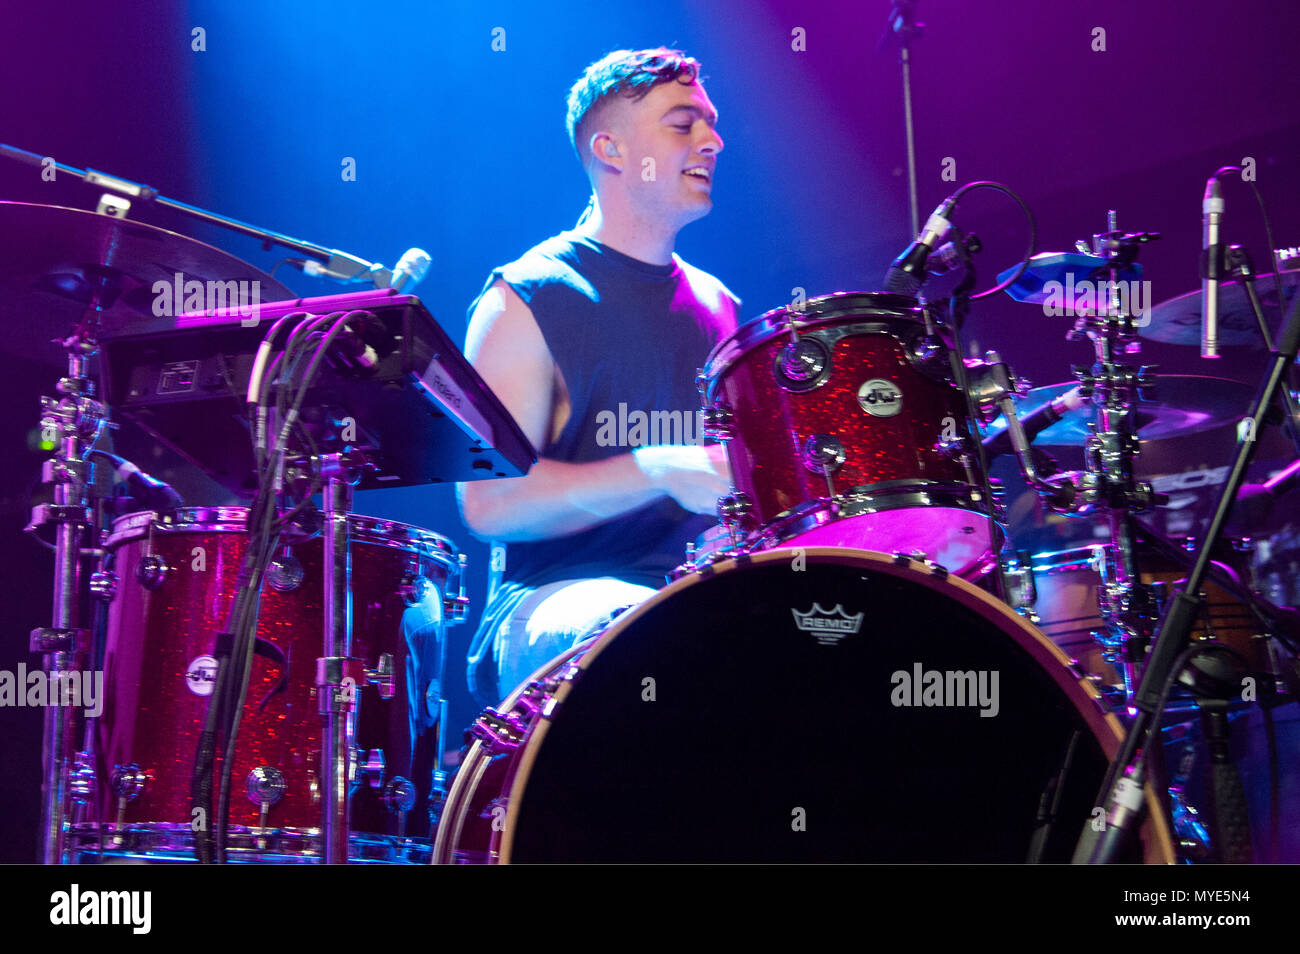 Projet Drax, un groupe de quatre musiciens de Nouvelle-Zélande, réchauffer la foule en première partie de Camila Cabello dates au Royaume-Uni sur son plus jamais la même tournée, 02 Academy Birmingham, Royaume-Uni, le 6 juin 2018. Créé en 2014, projet Drax ont déjà soutenu les deux Lorde et Ed Sheeran en tournée en Nouvelle-Zélande. Leur seul réveillé tard acquise conisderable popularité sur Spotify en 2017. Crédit : Antony l'ortie/Alamy Live News Banque D'Images